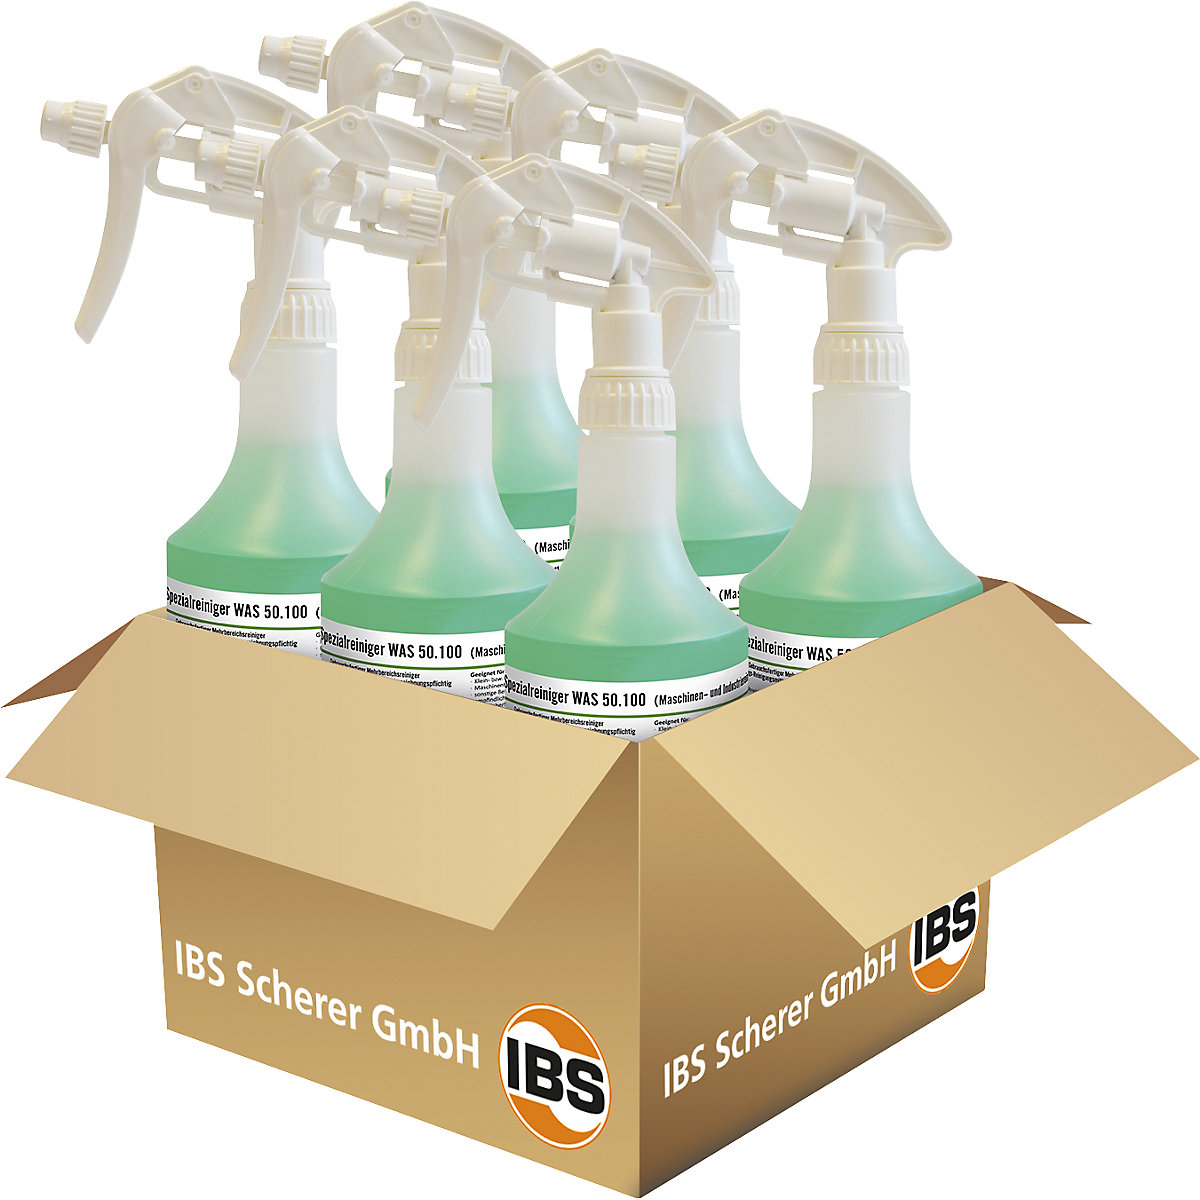 Machine-/industriële reiniger WAS 50.100 – IBS Scherer